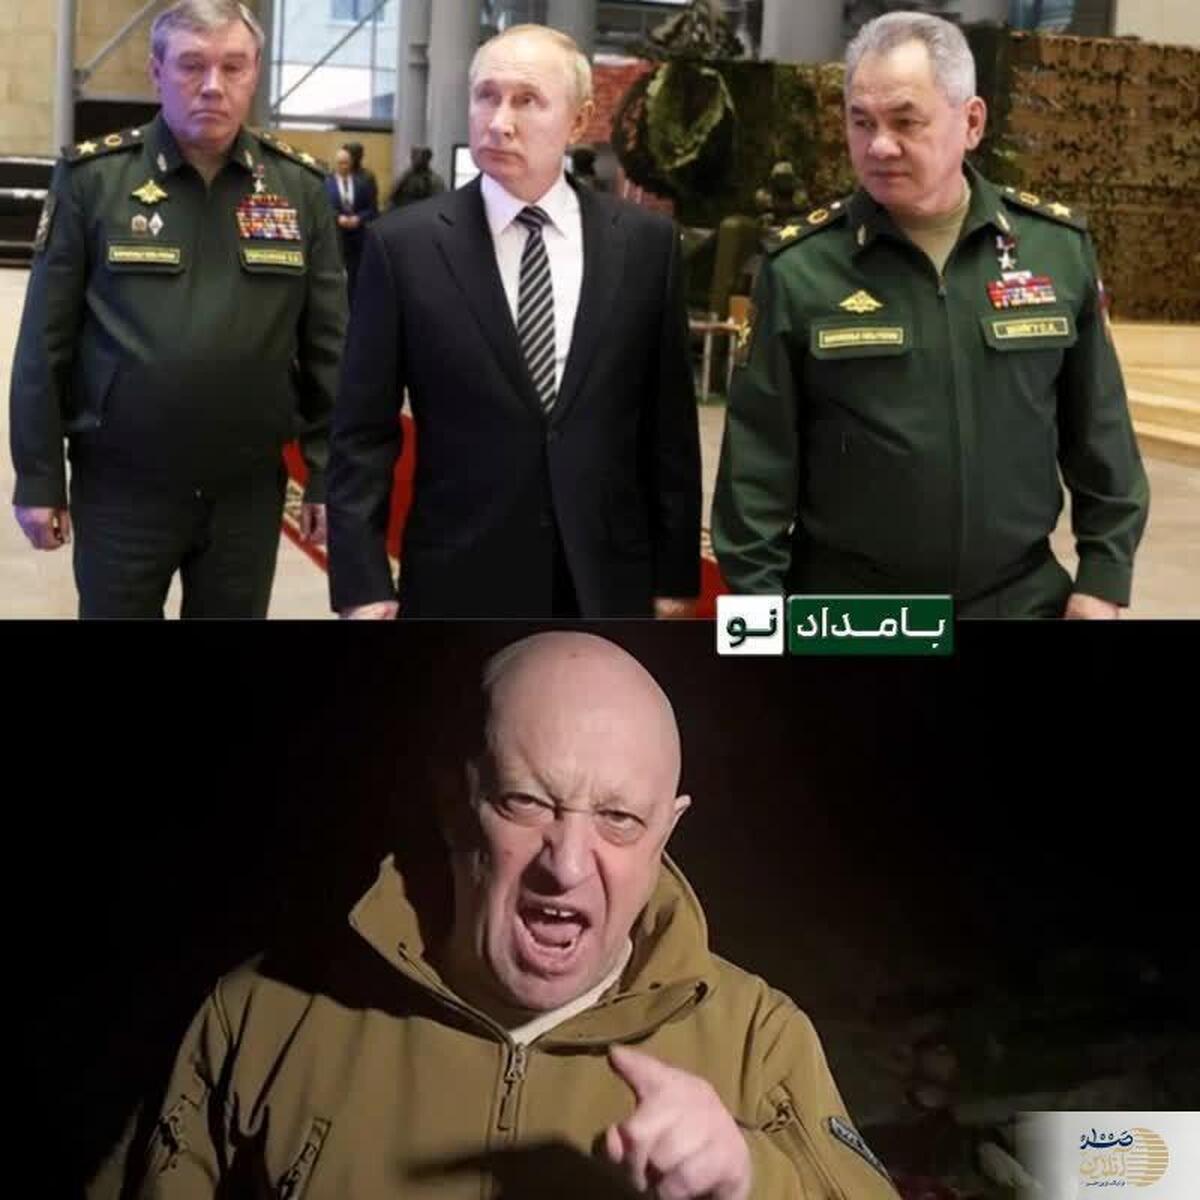 یوگنی پریگوژین رئیس گروه  شورش کننده واگنر در روسیه کیست؟ 